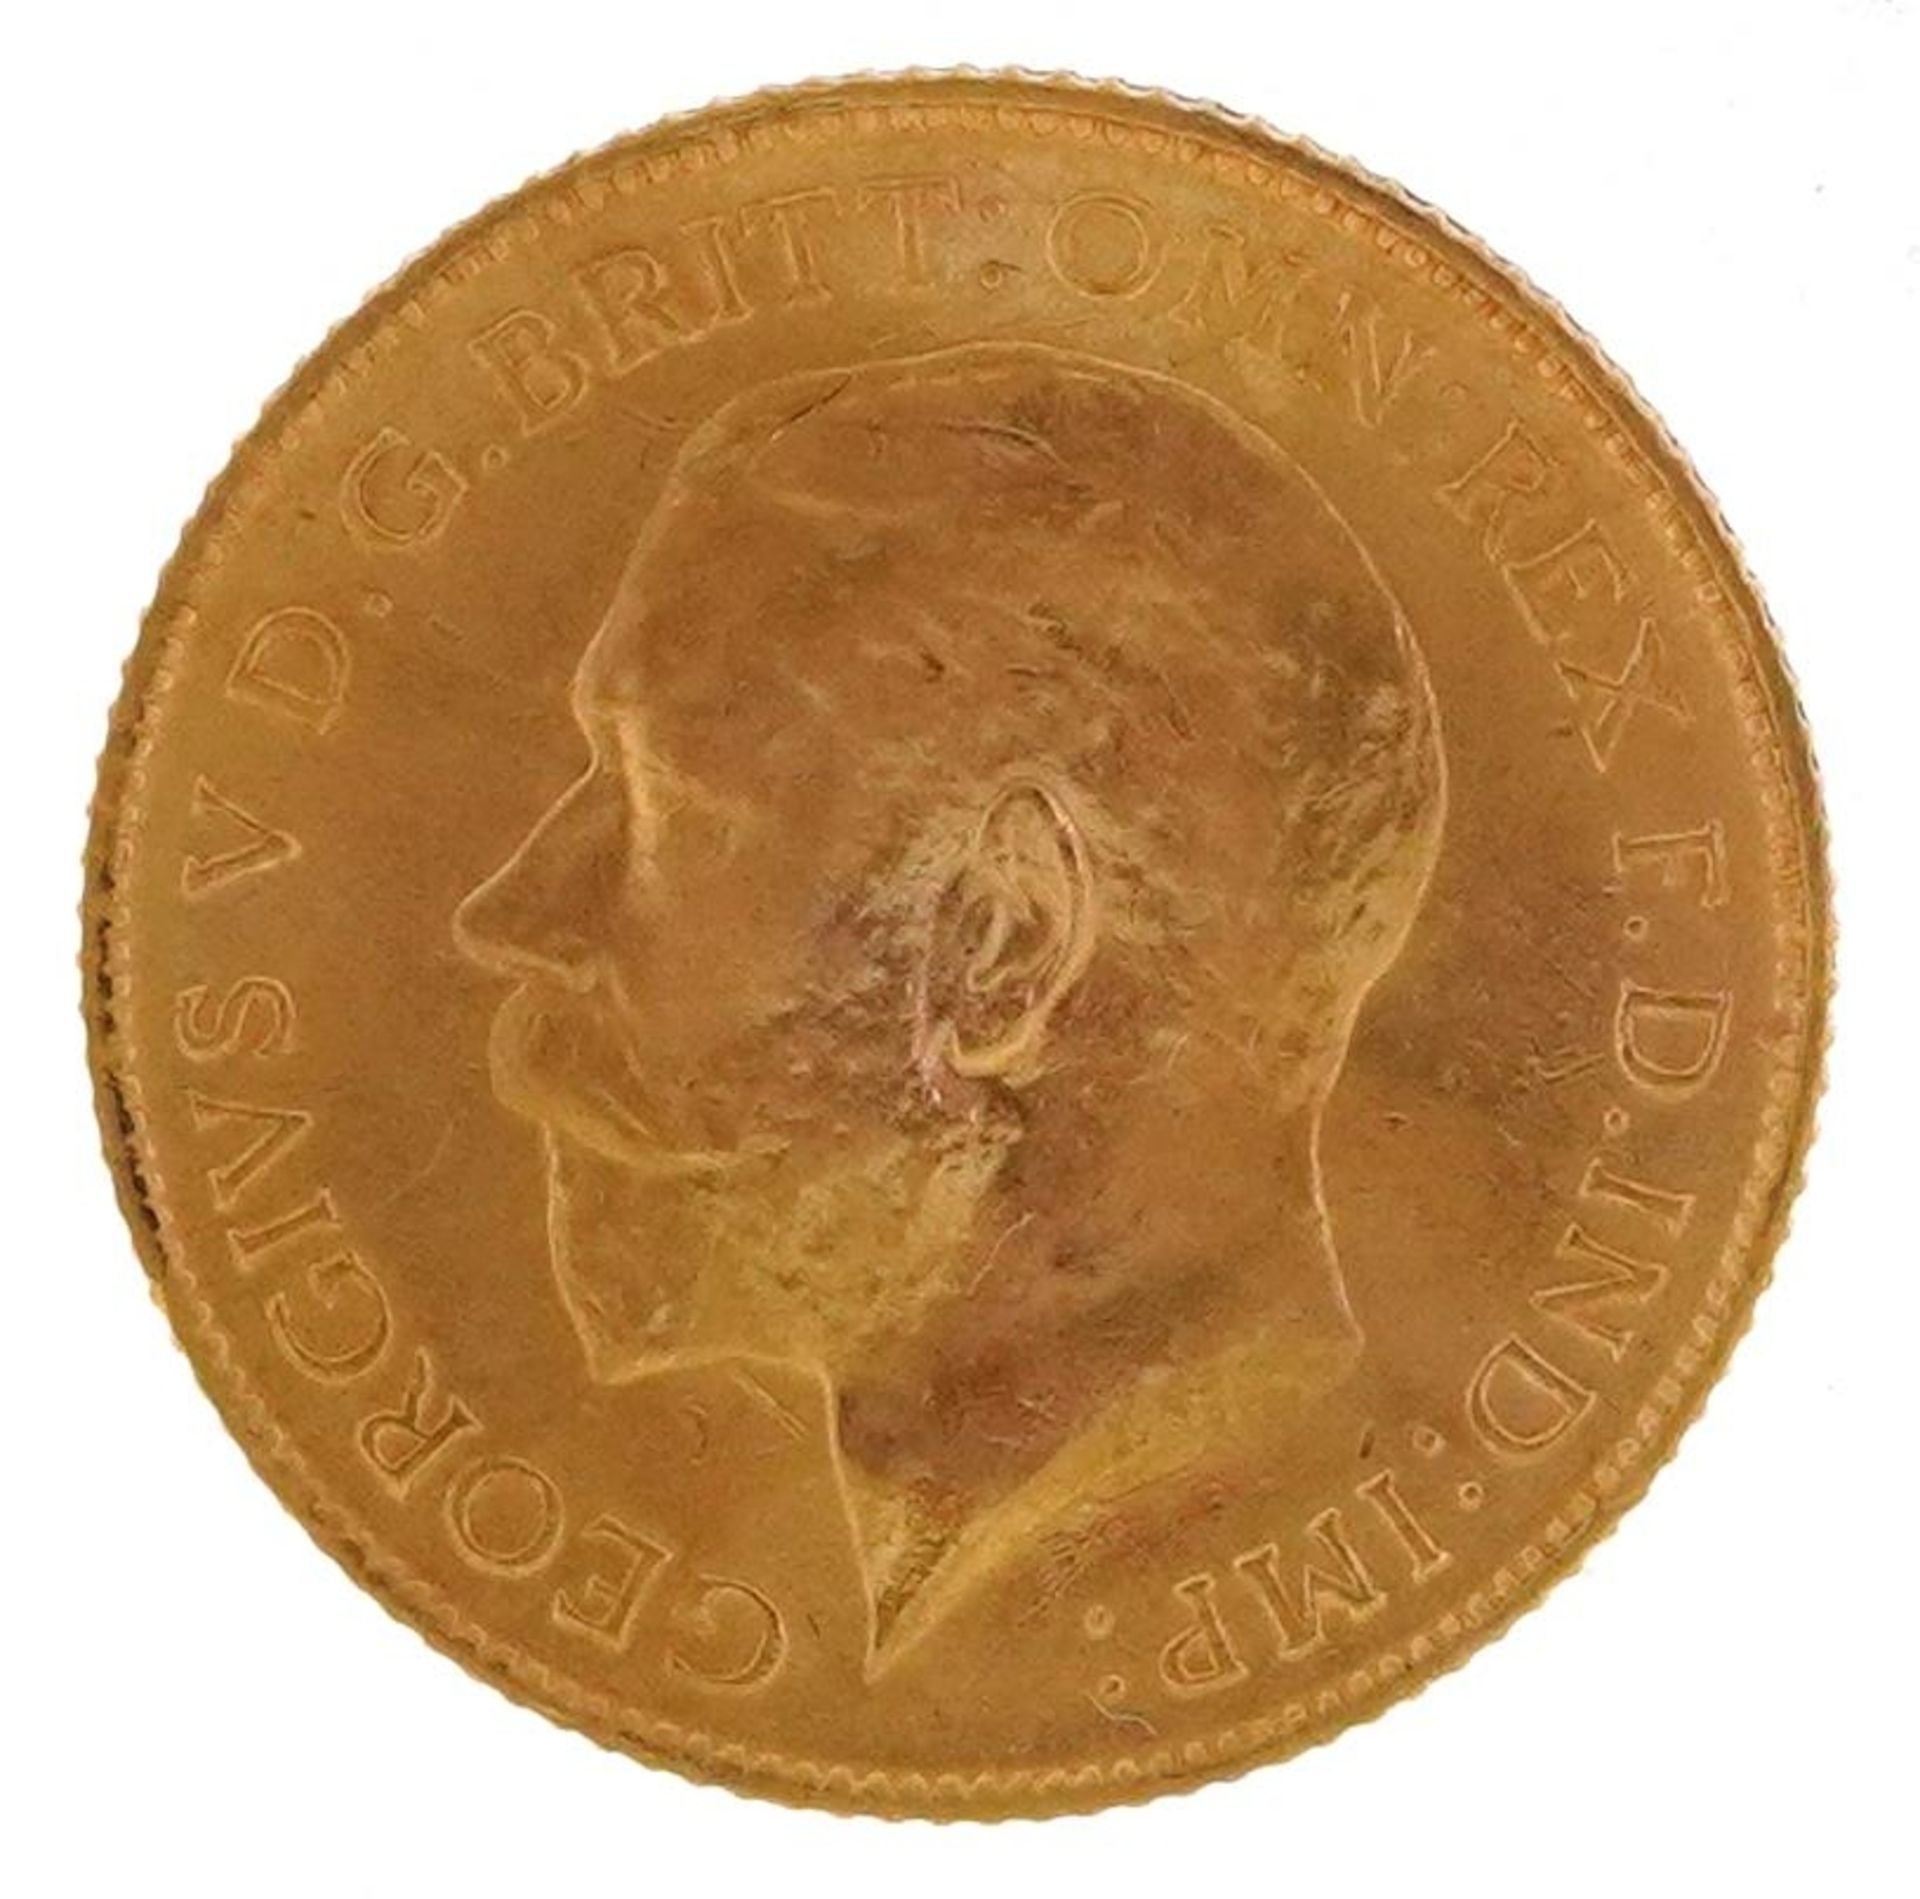 George V 1911 gold half sovereign - Image 2 of 3